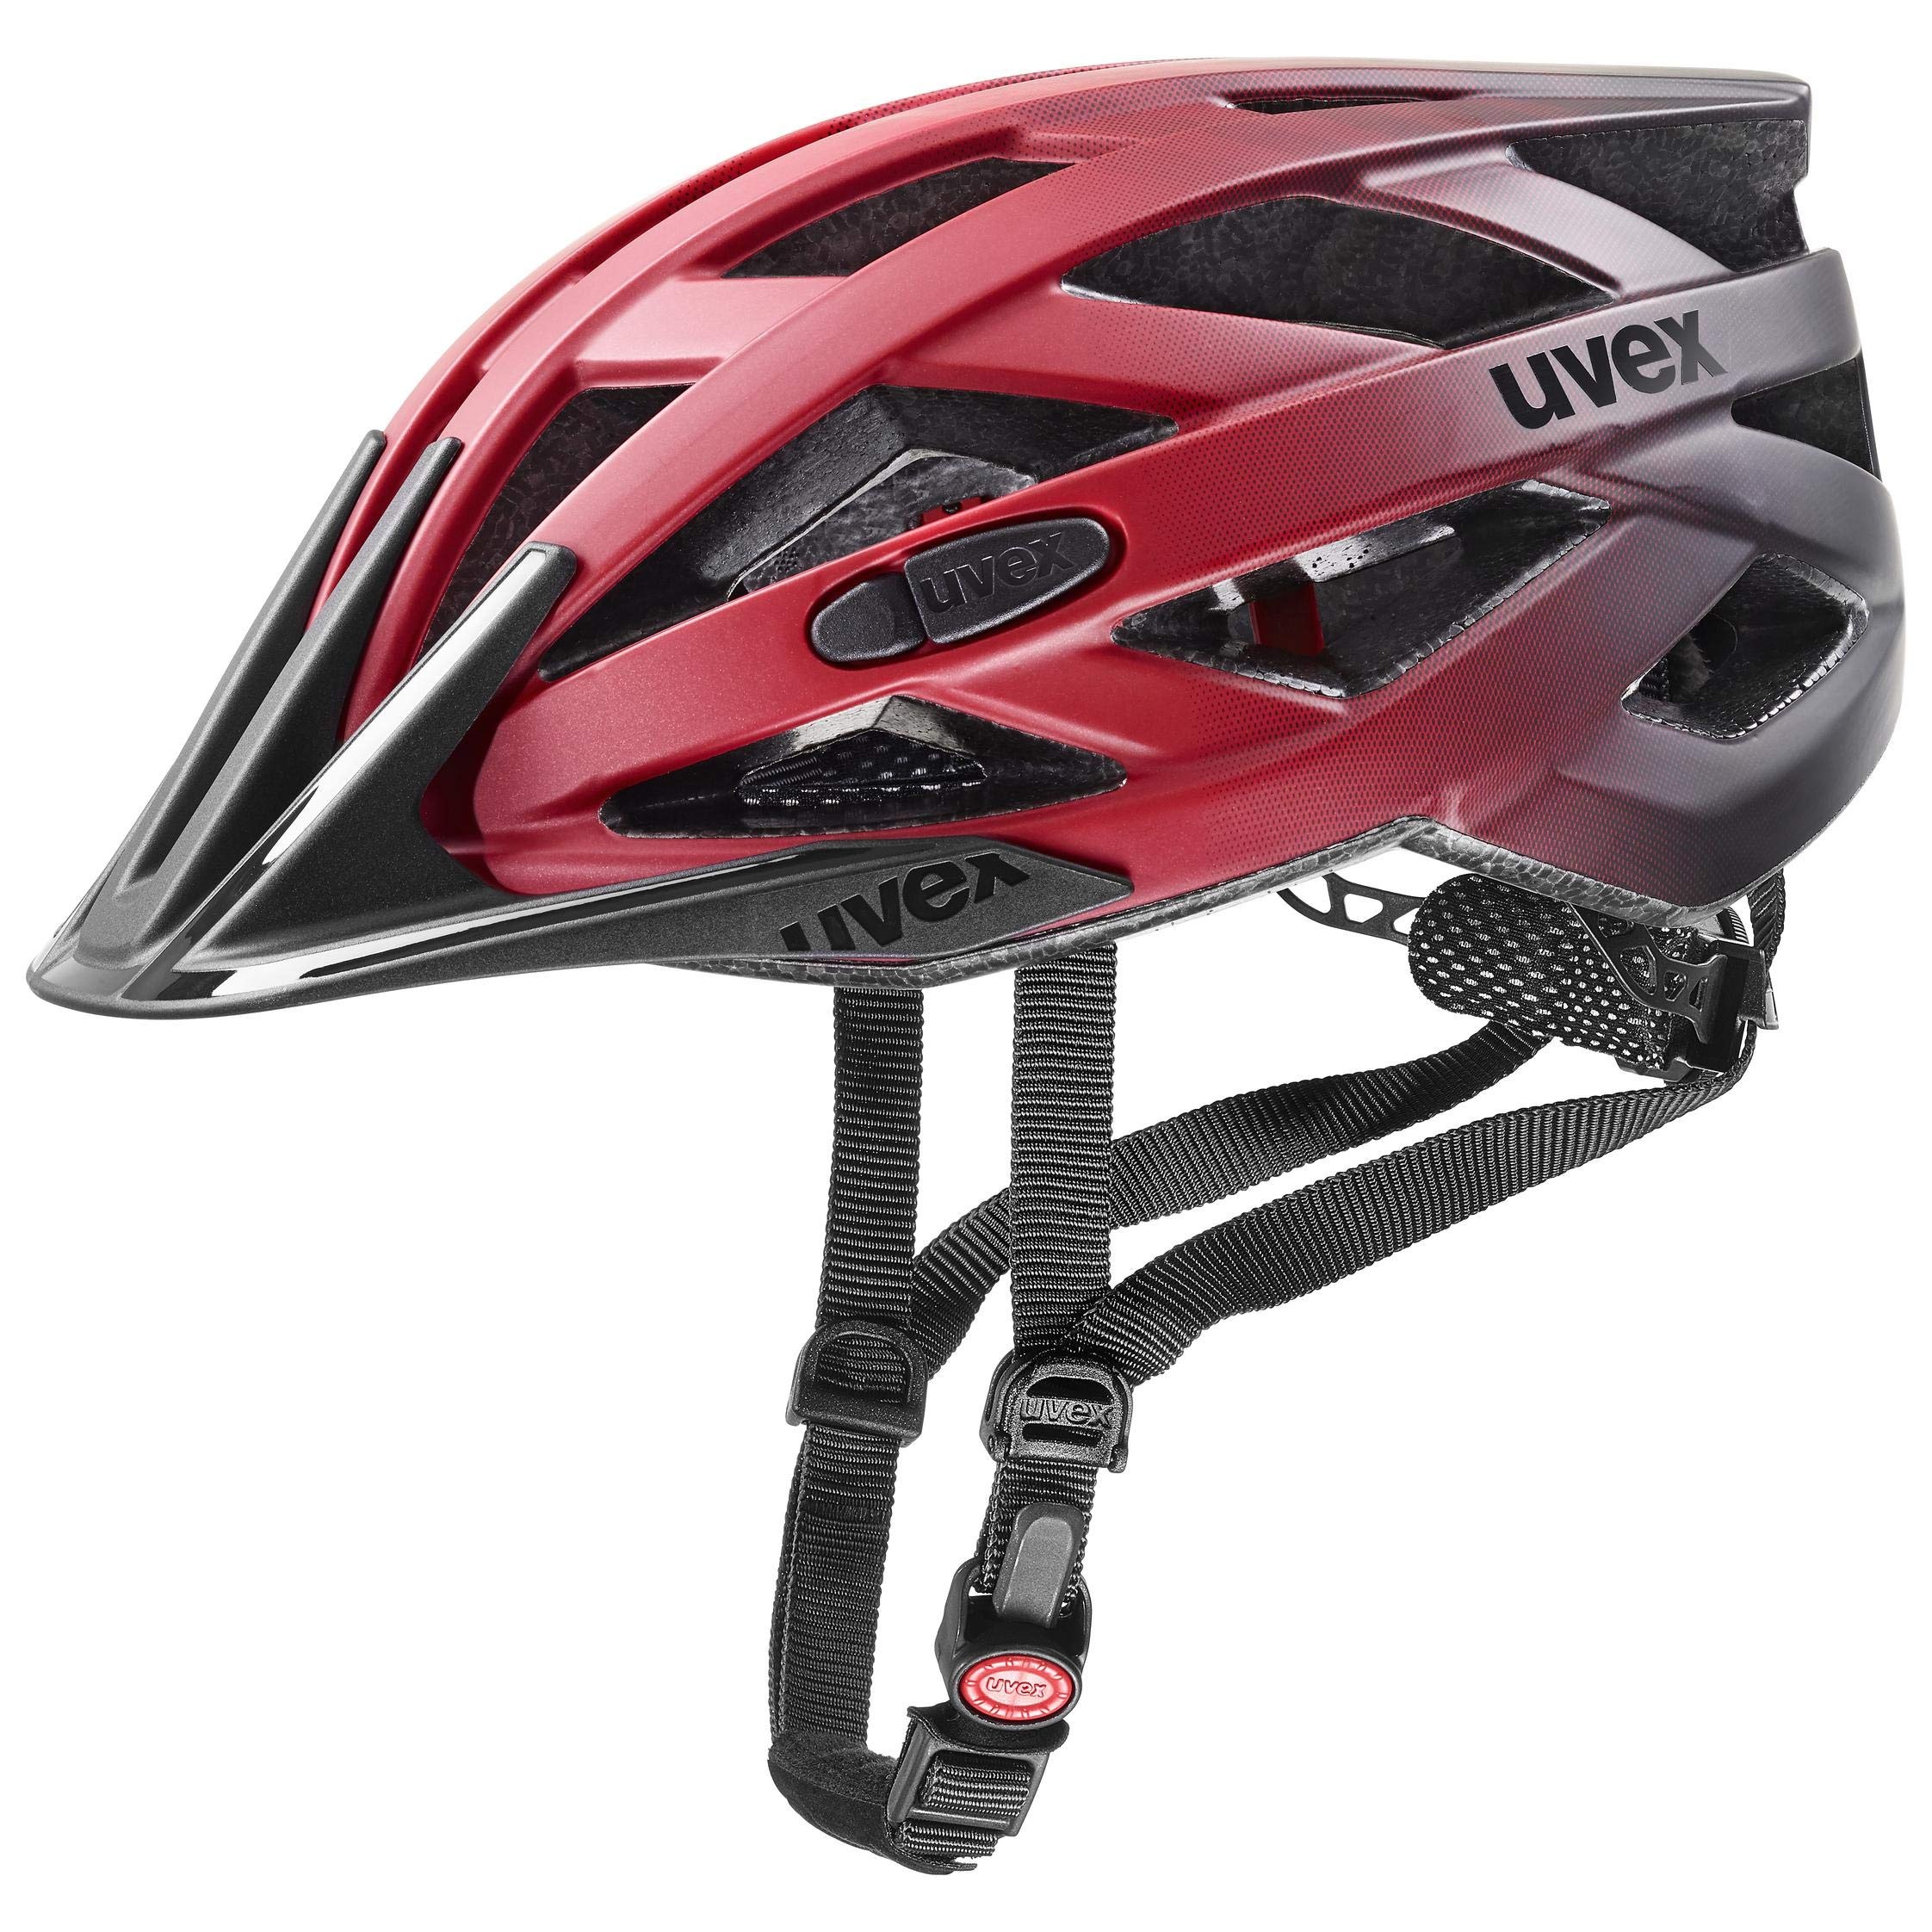 uvex i-vo cc - leichter Allround-Helm für Damen und Herren - individuelle Größenanpassung - erweiterbar mit LED-Licht - red black - 52-57 cm